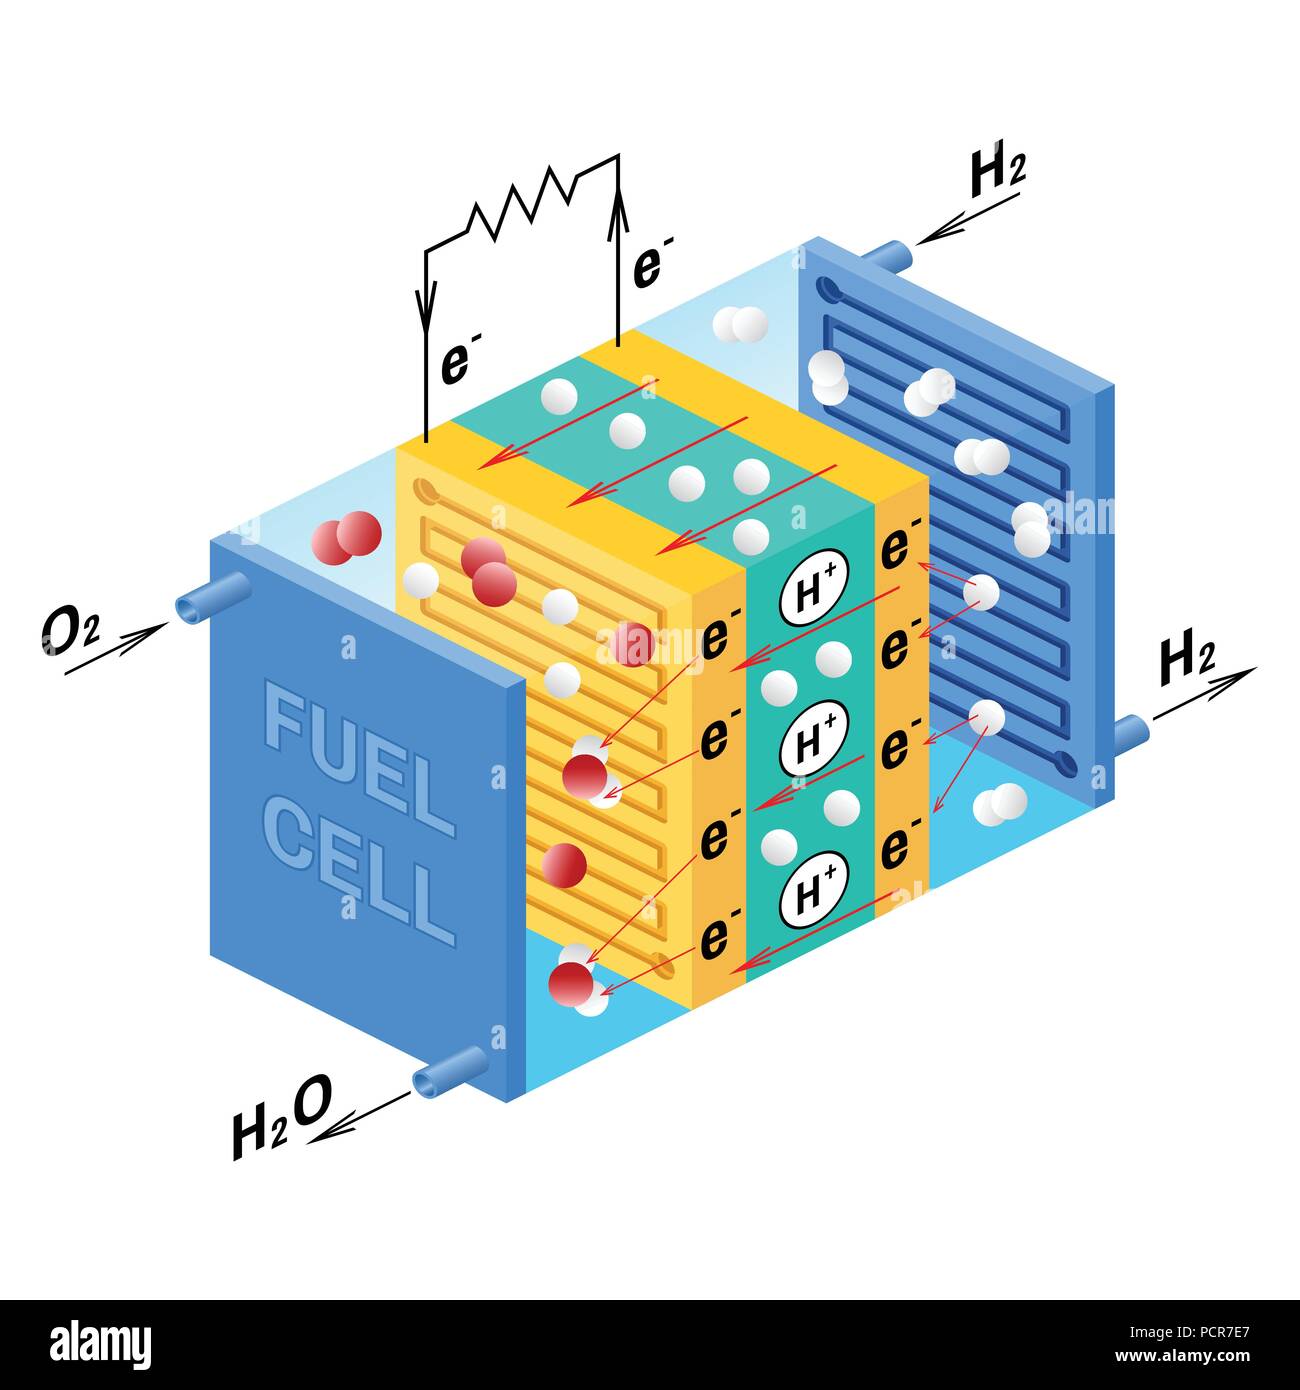 Brennstoffzelle Diagramm. Vektor. Gerät, das wandelt chemische Energie in elektrische Energie um. Ein PEM Proton Exchange Membrane Zelle verwendet Wasserstoff und Sauerstoff Erdgas als Kraftstoff. Stock Vektor